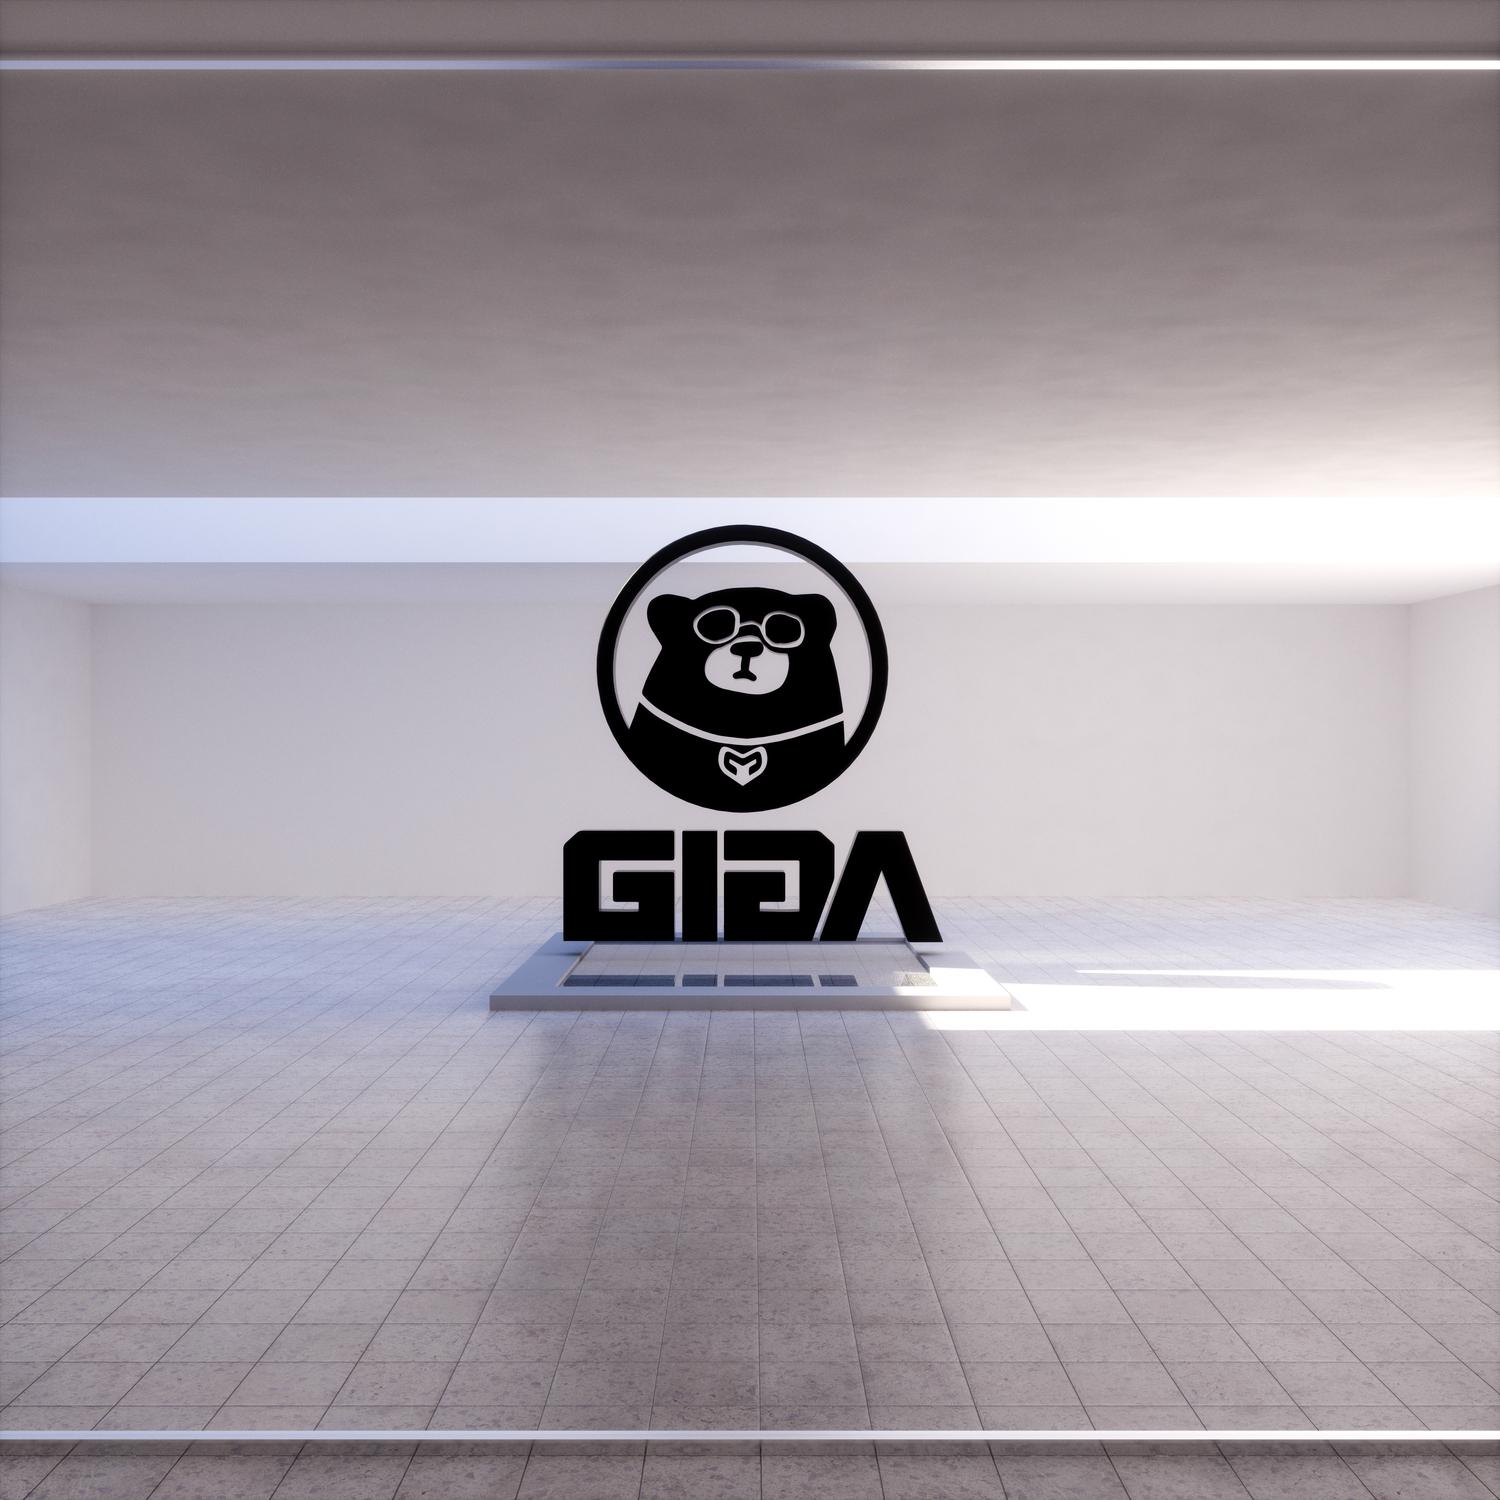 G4L歌词 歌手ギガP-专辑G4L-单曲《G4L》LRC歌词下载